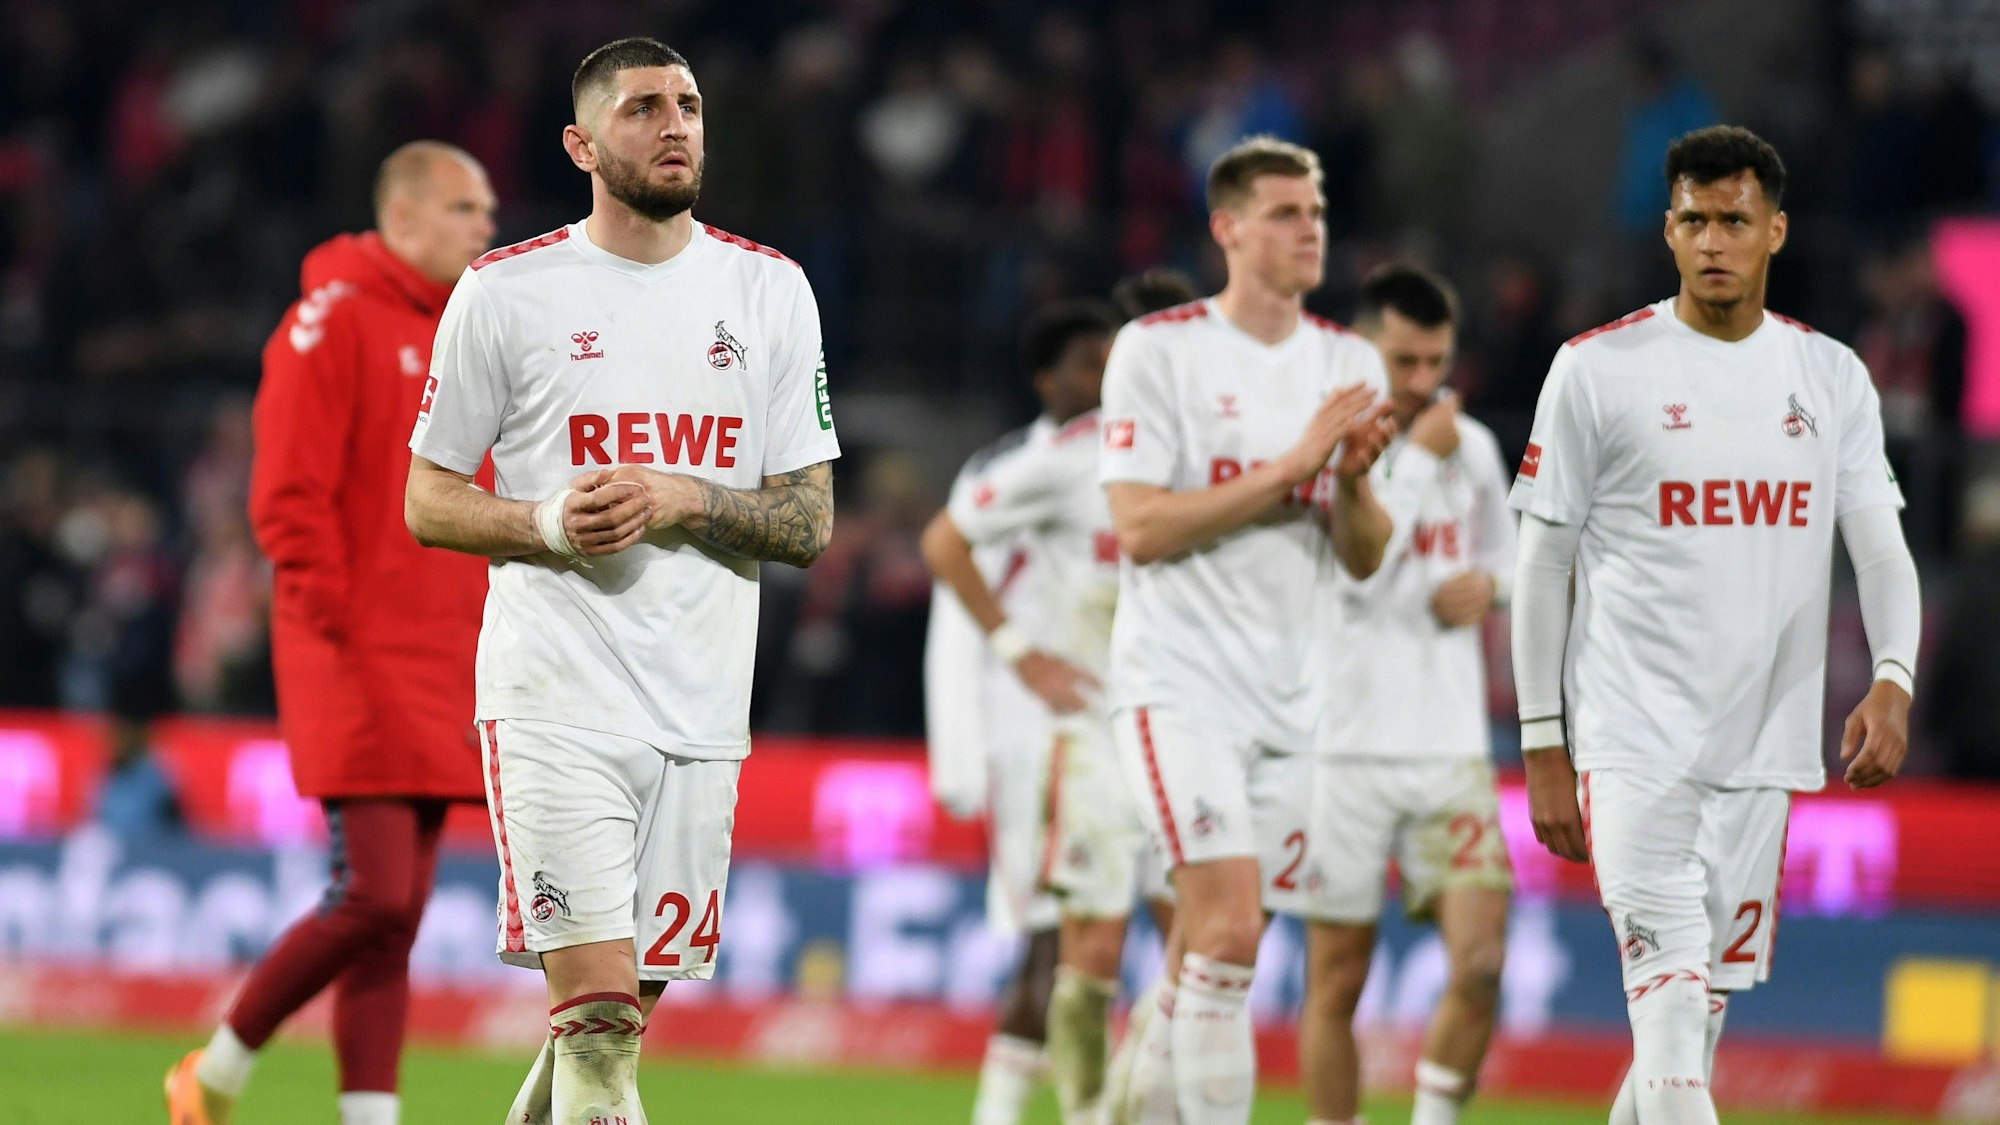 Hängende Köpfe bei den Profis des 1. FC Köln nach der zweiten Abreibung gegen RB Leipzig in dieser Saison.